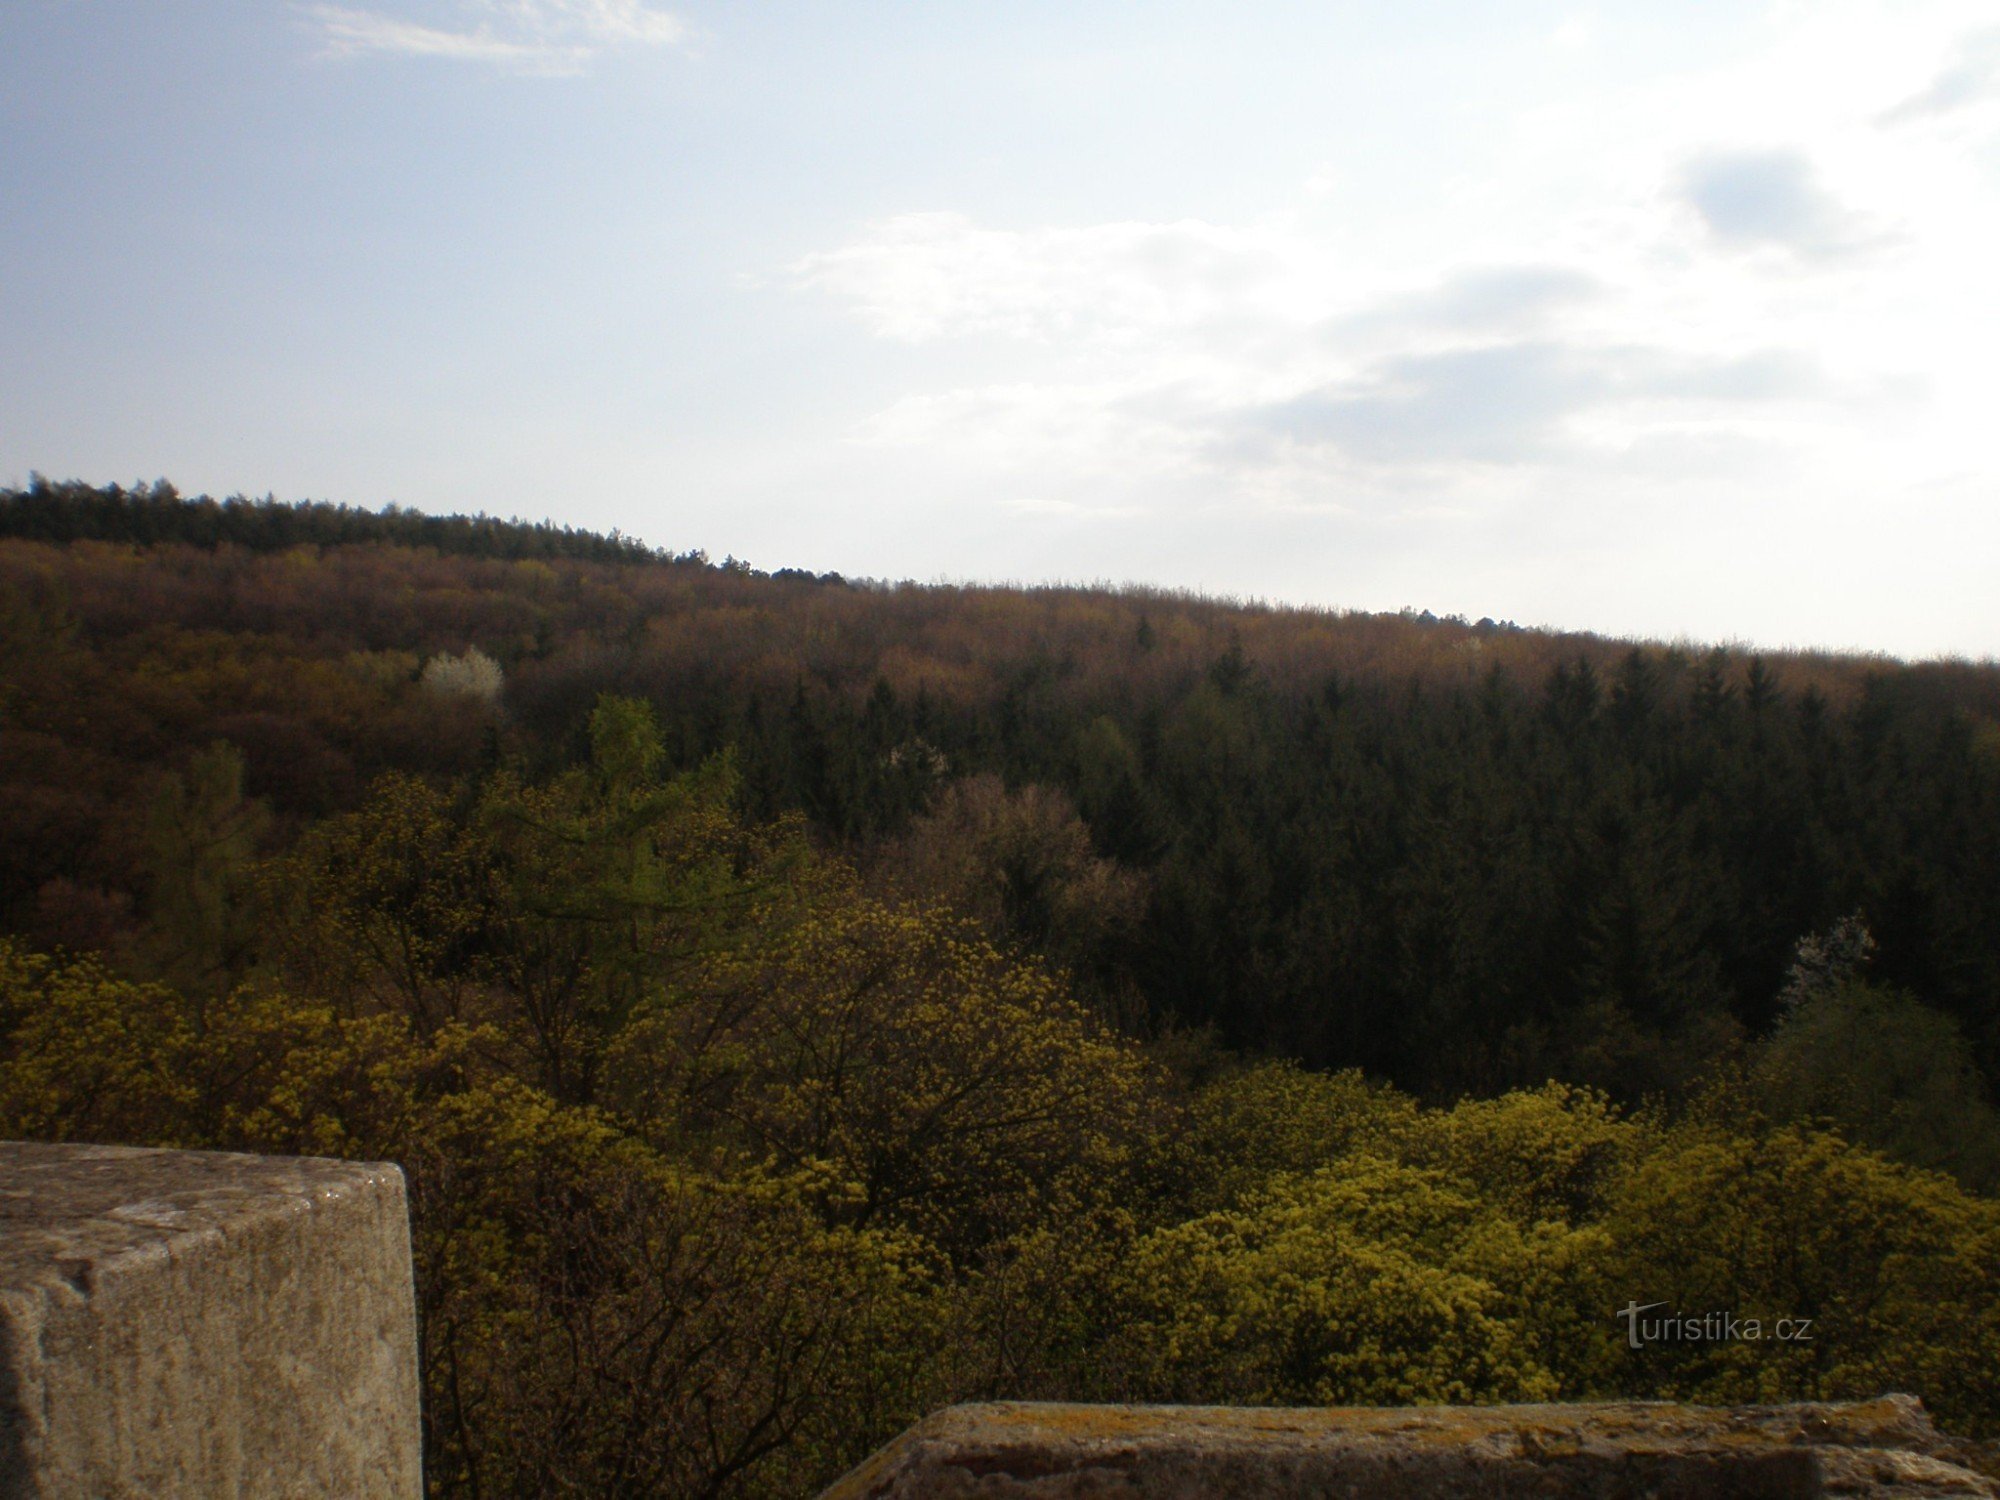 Vedere de la turnul de observare la parcul forestier Cibulka